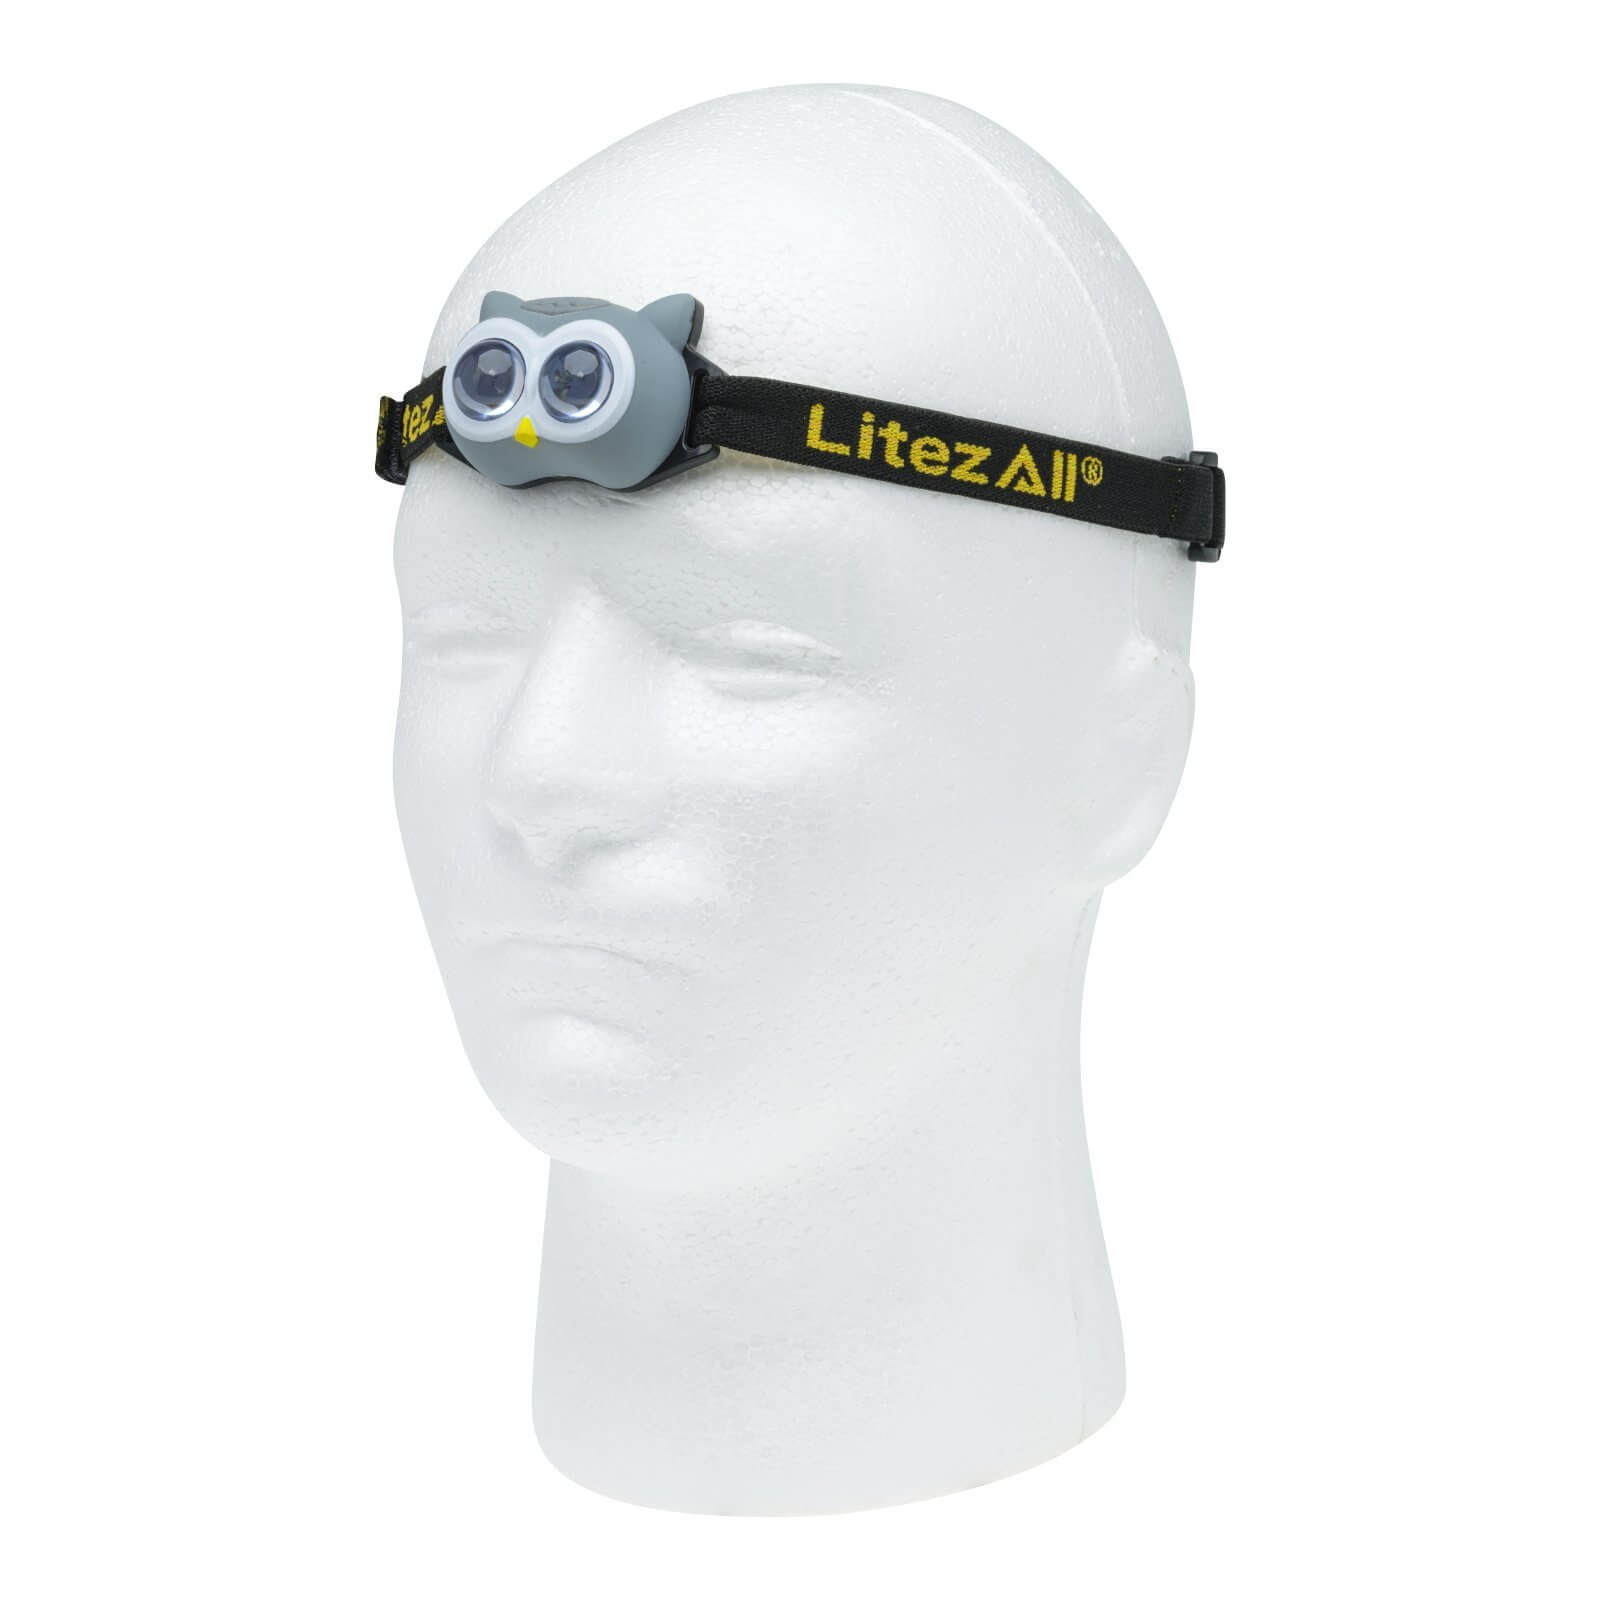 LitezAll Owl Themed Headlamp and Lantern Combo - LitezAll - Combo - 11